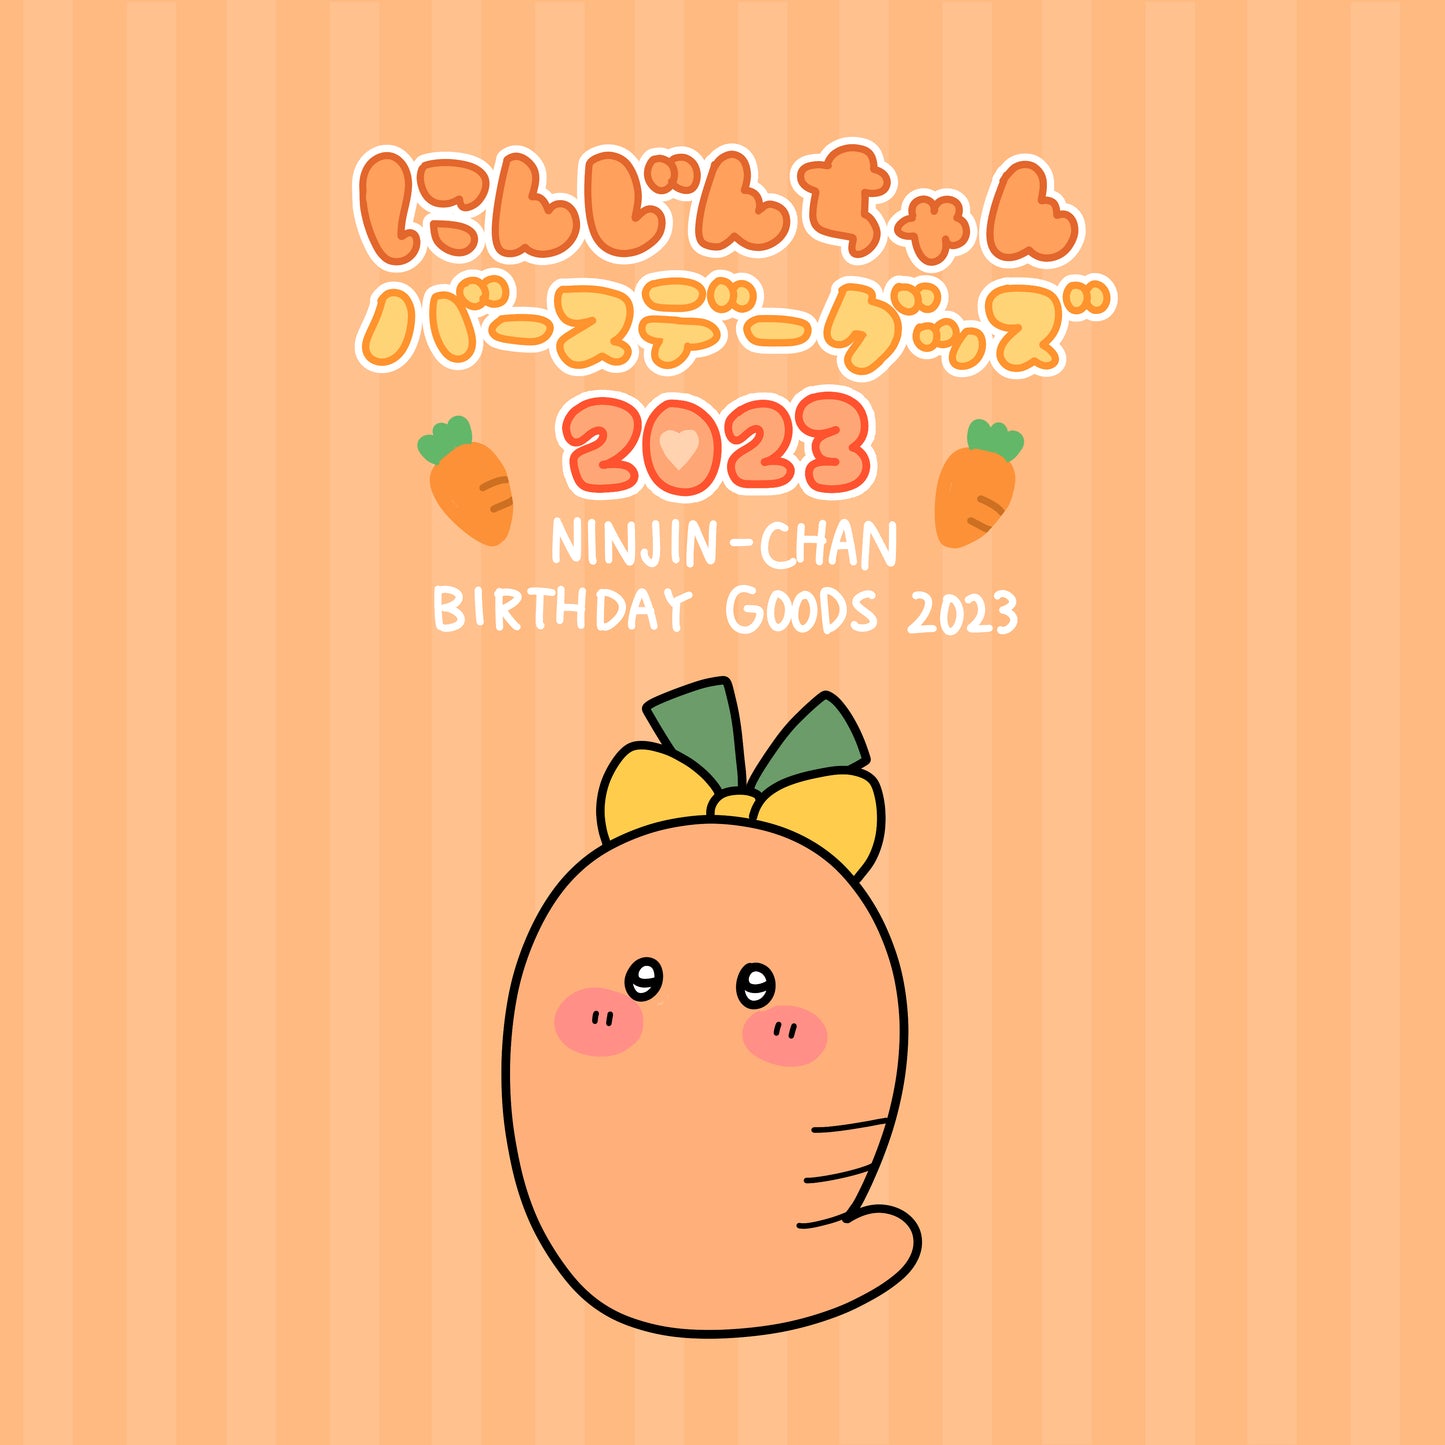 [Asamimi-chan] Carrot-chans beliebteste Öko-Tasche (mit Aufbewahrungsbeutel) [Anfang März versandt]